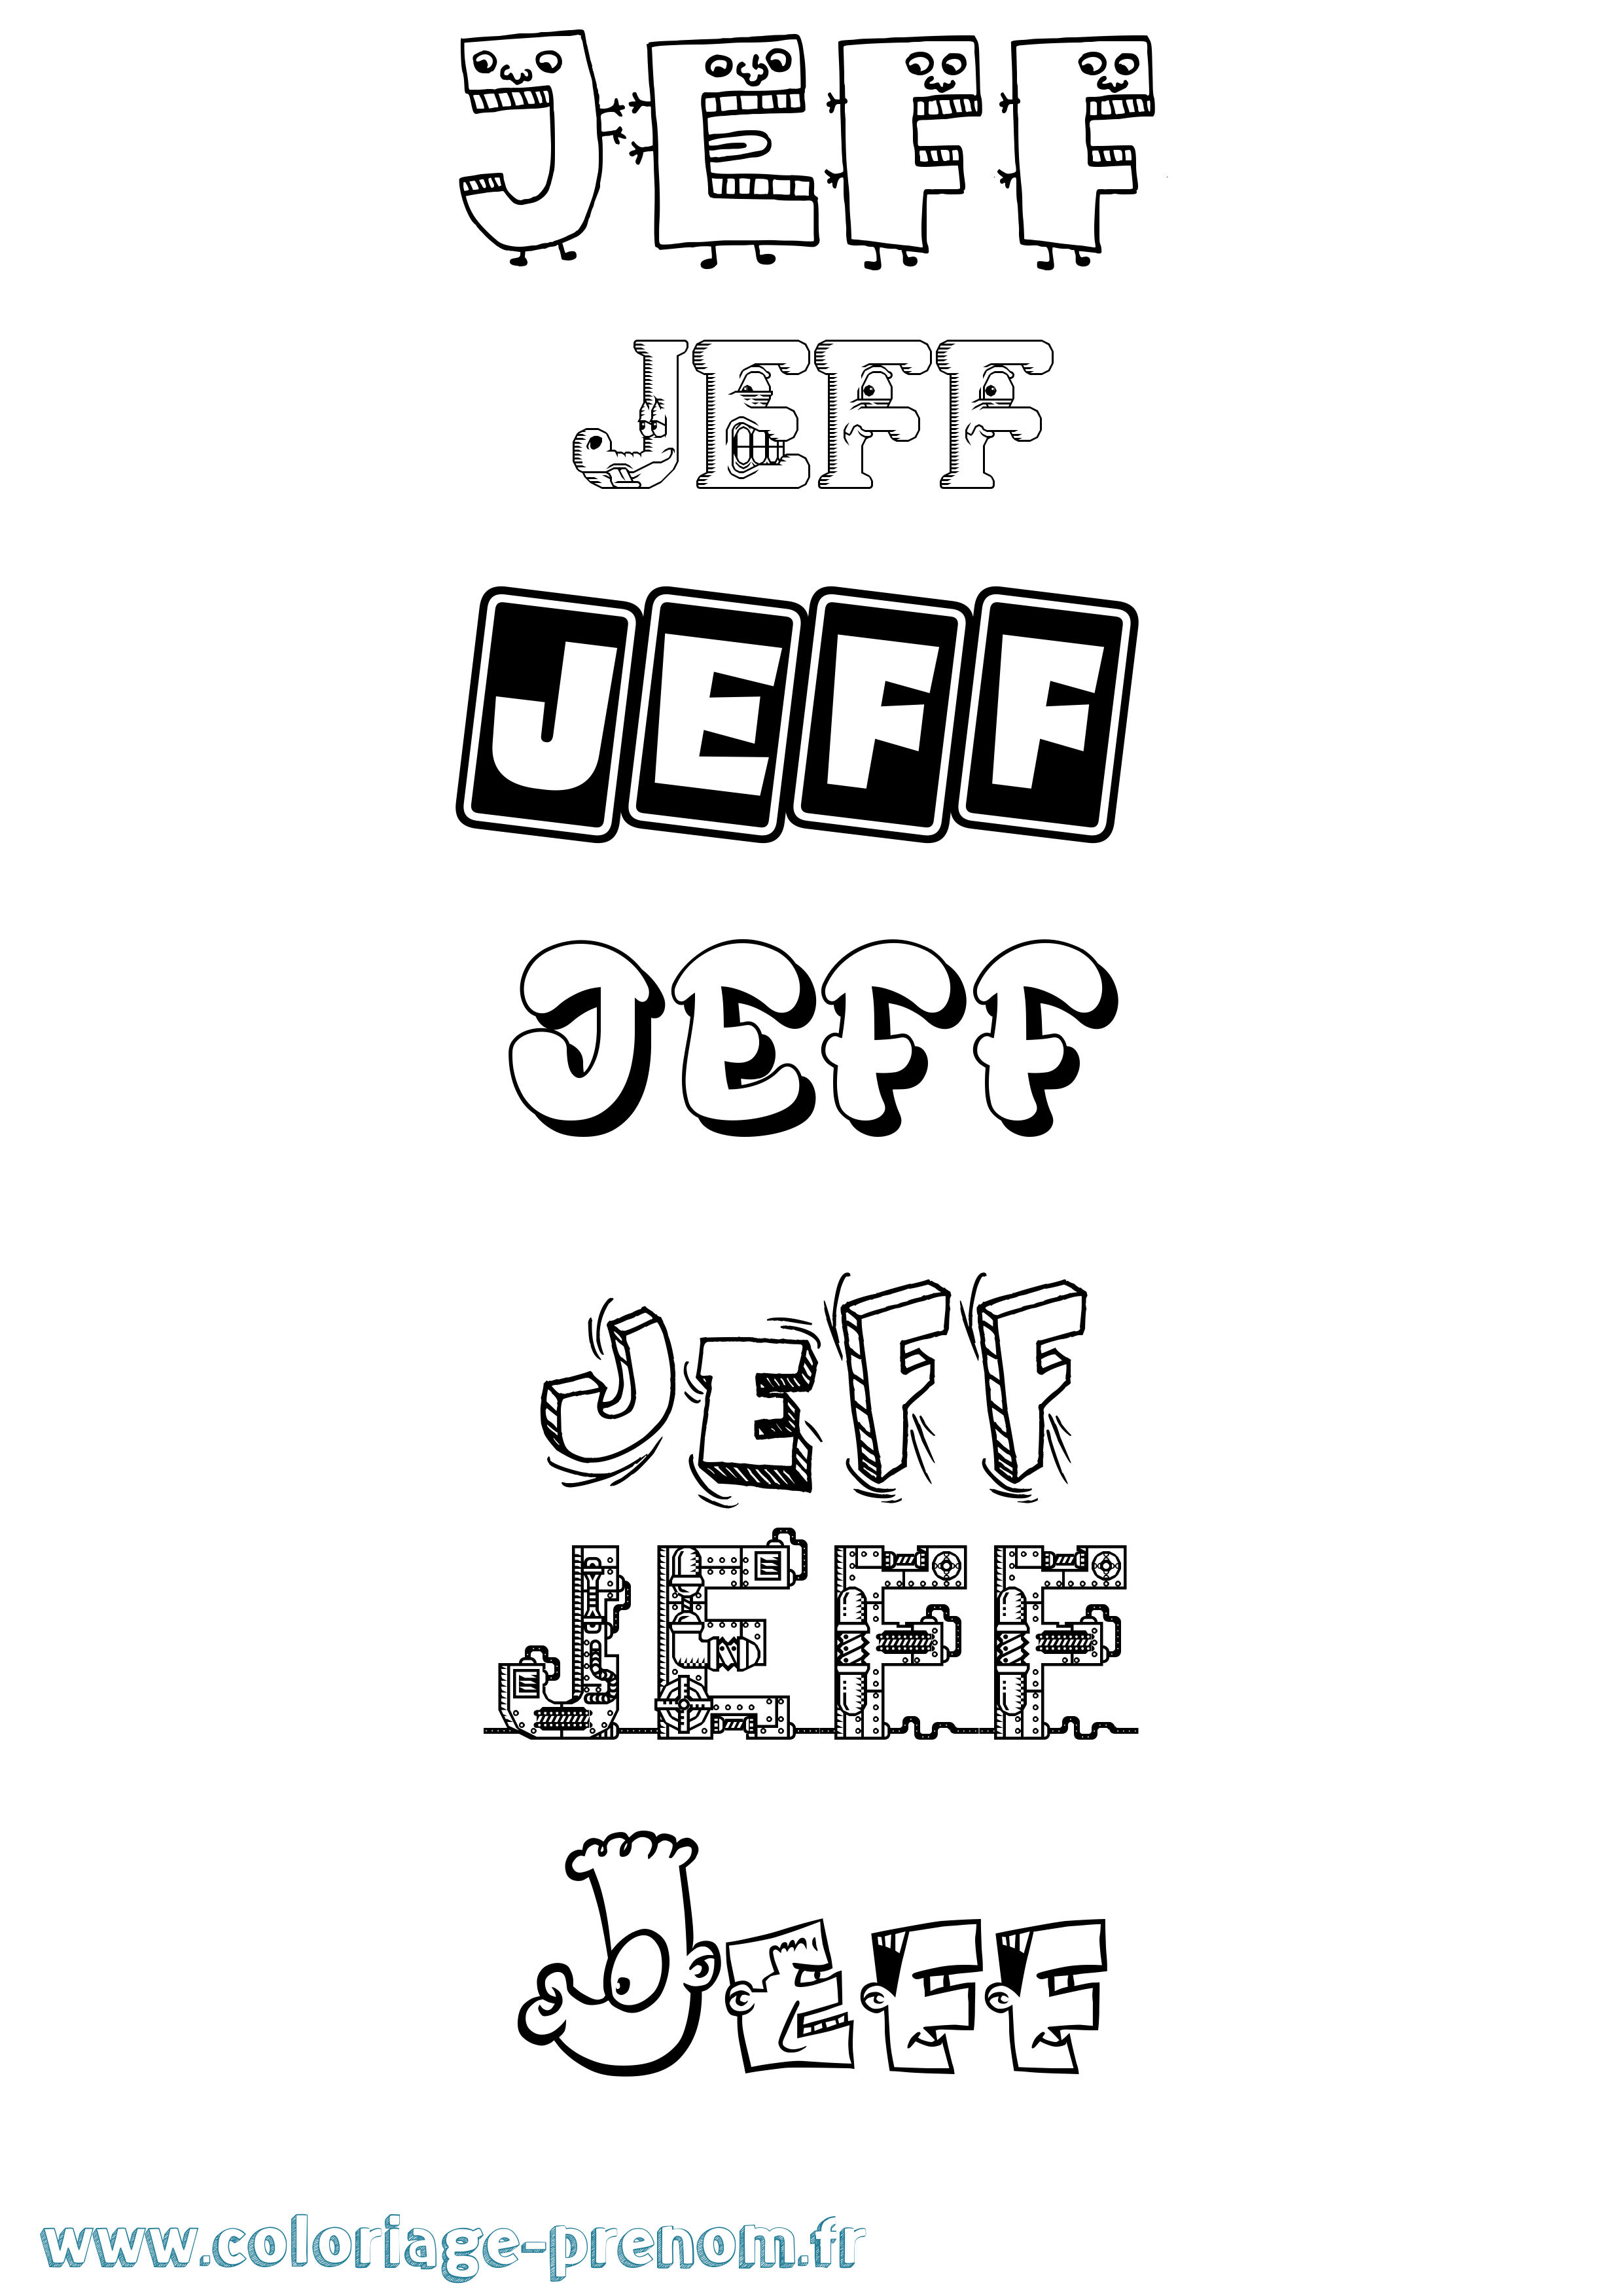 Coloriage prénom Jeff Fun